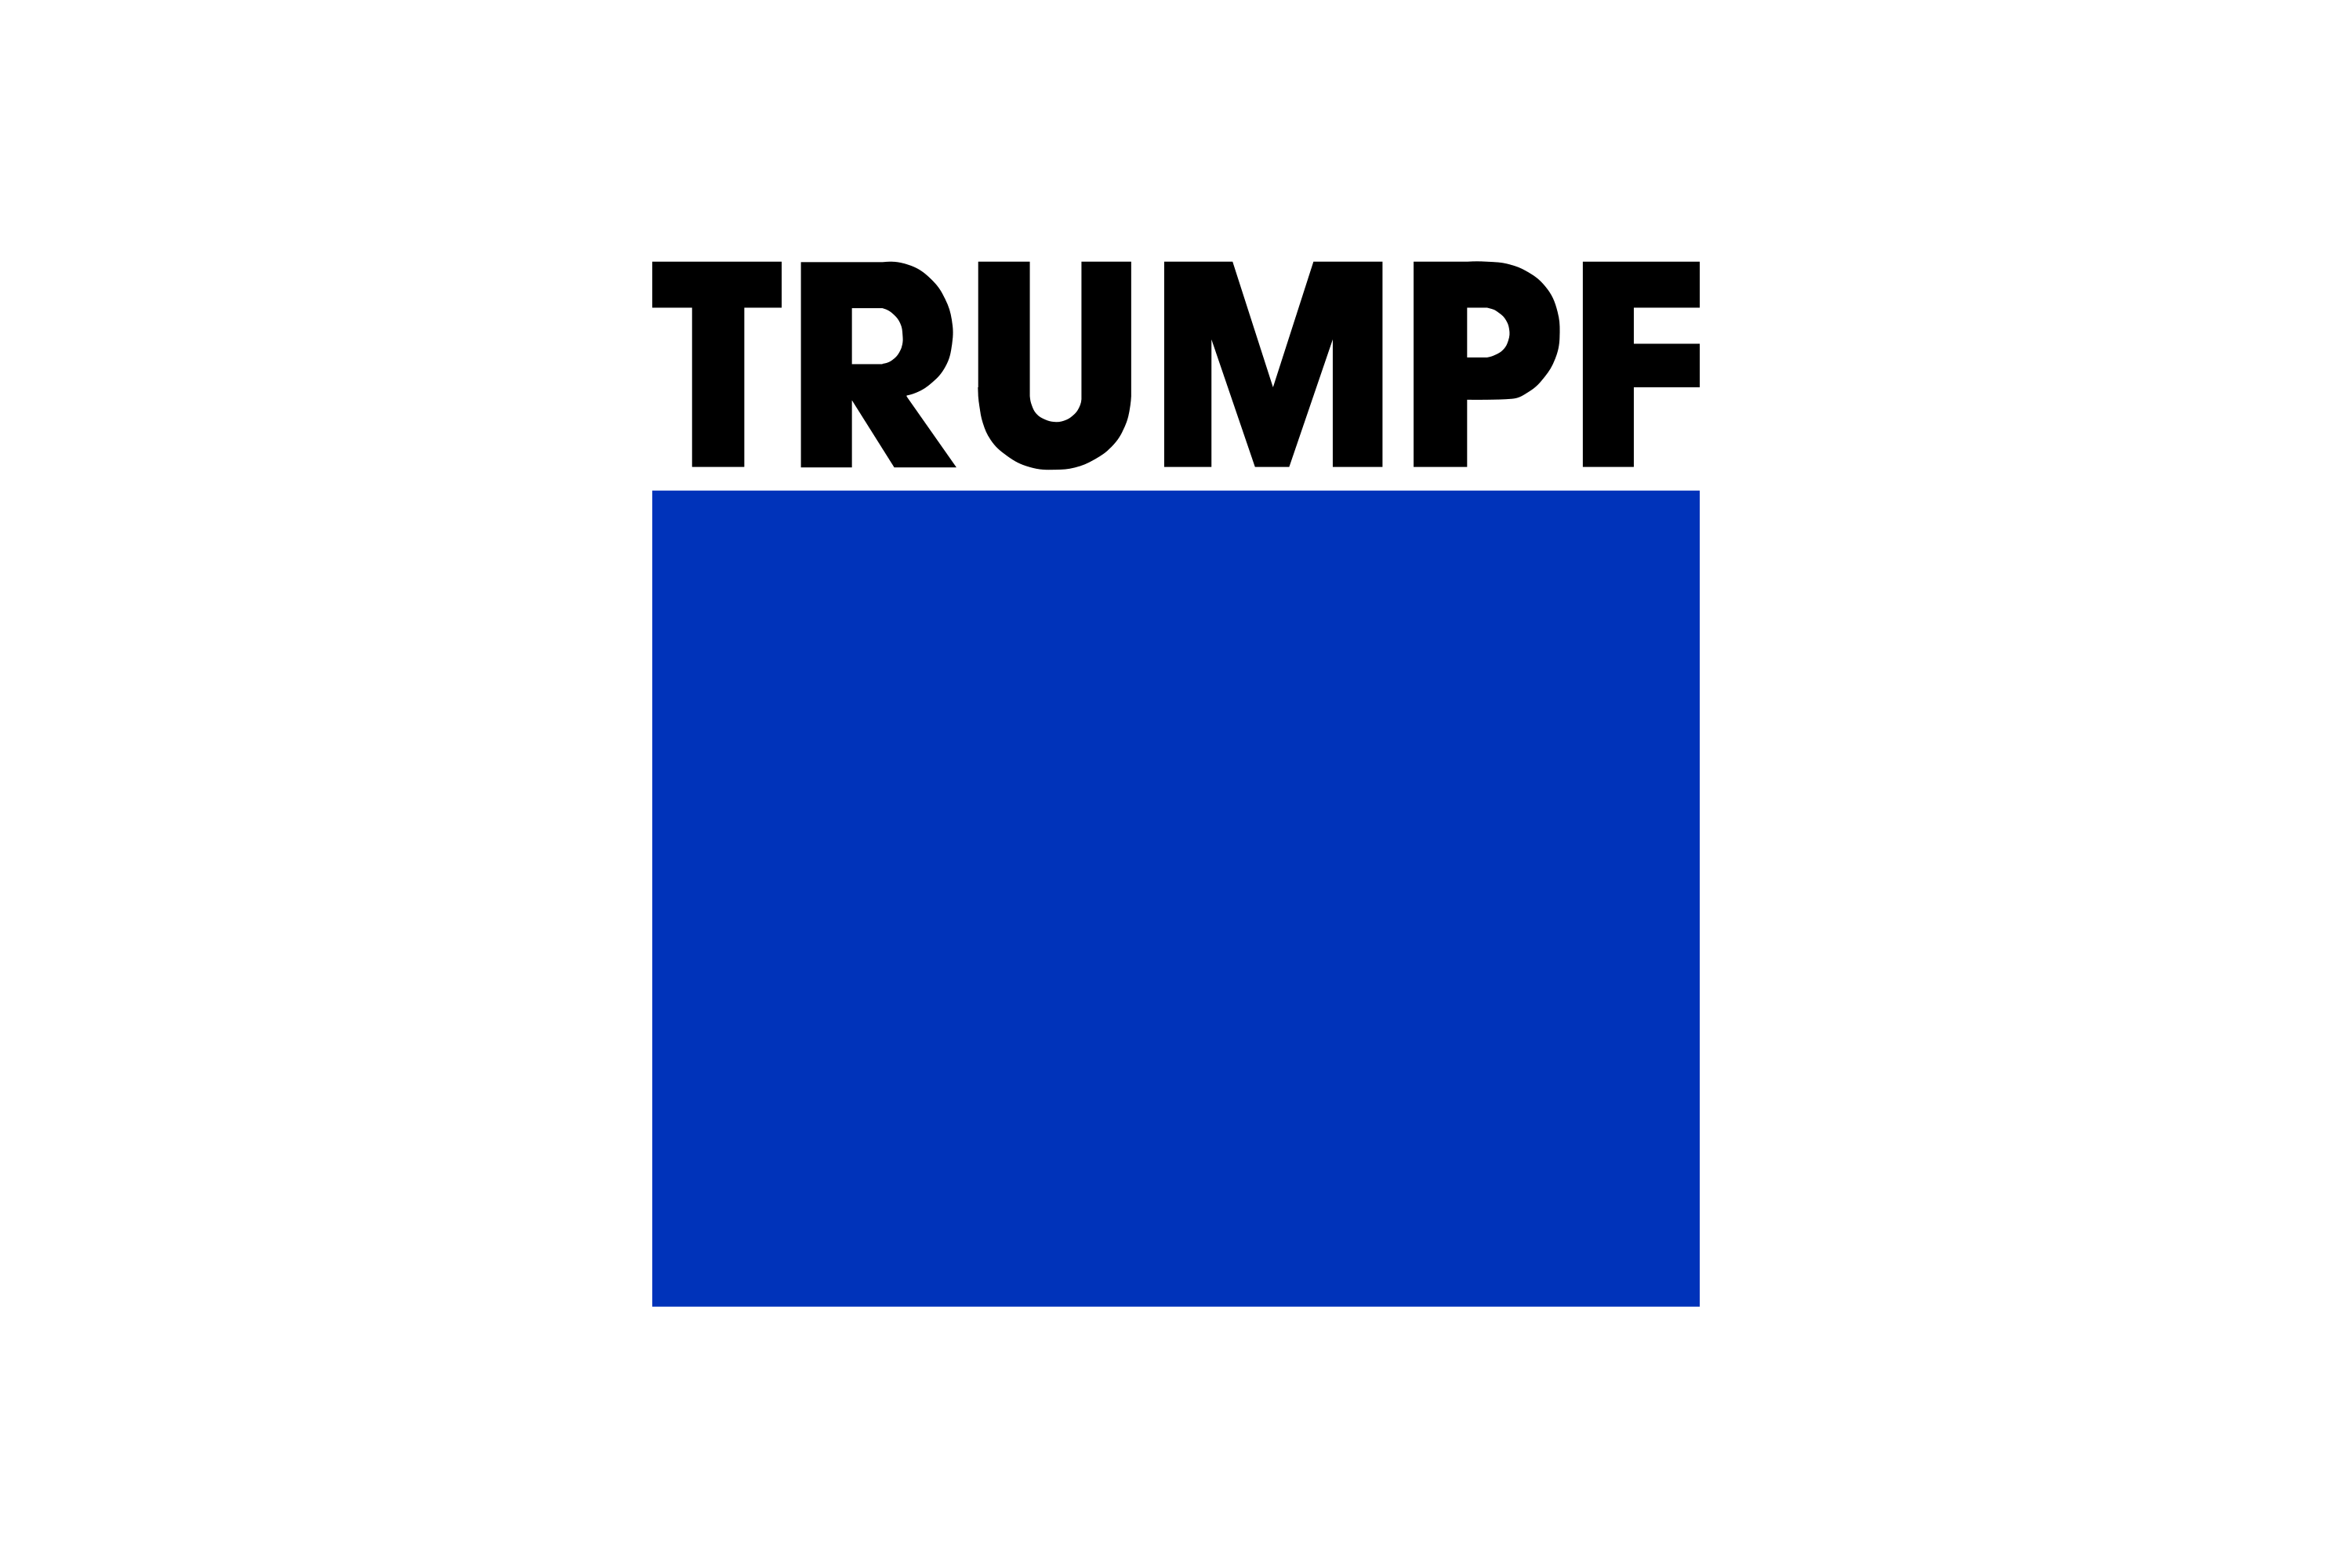 Trumpf logo